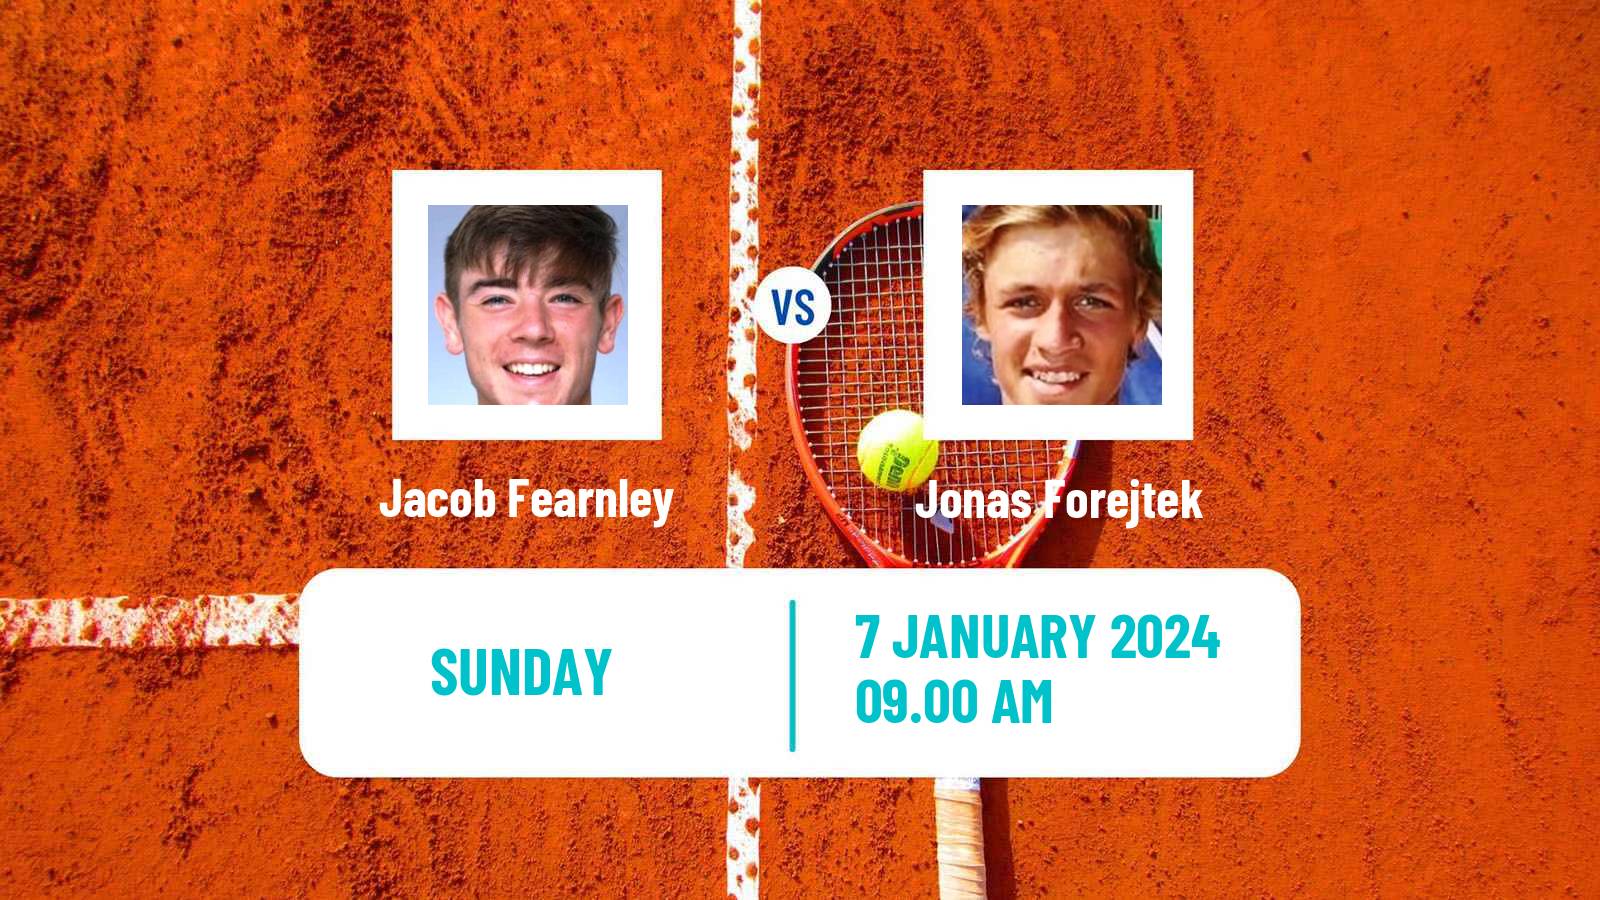 Tennis ITF M25 Esch Alzette Men Jacob Fearnley - Jonas Forejtek